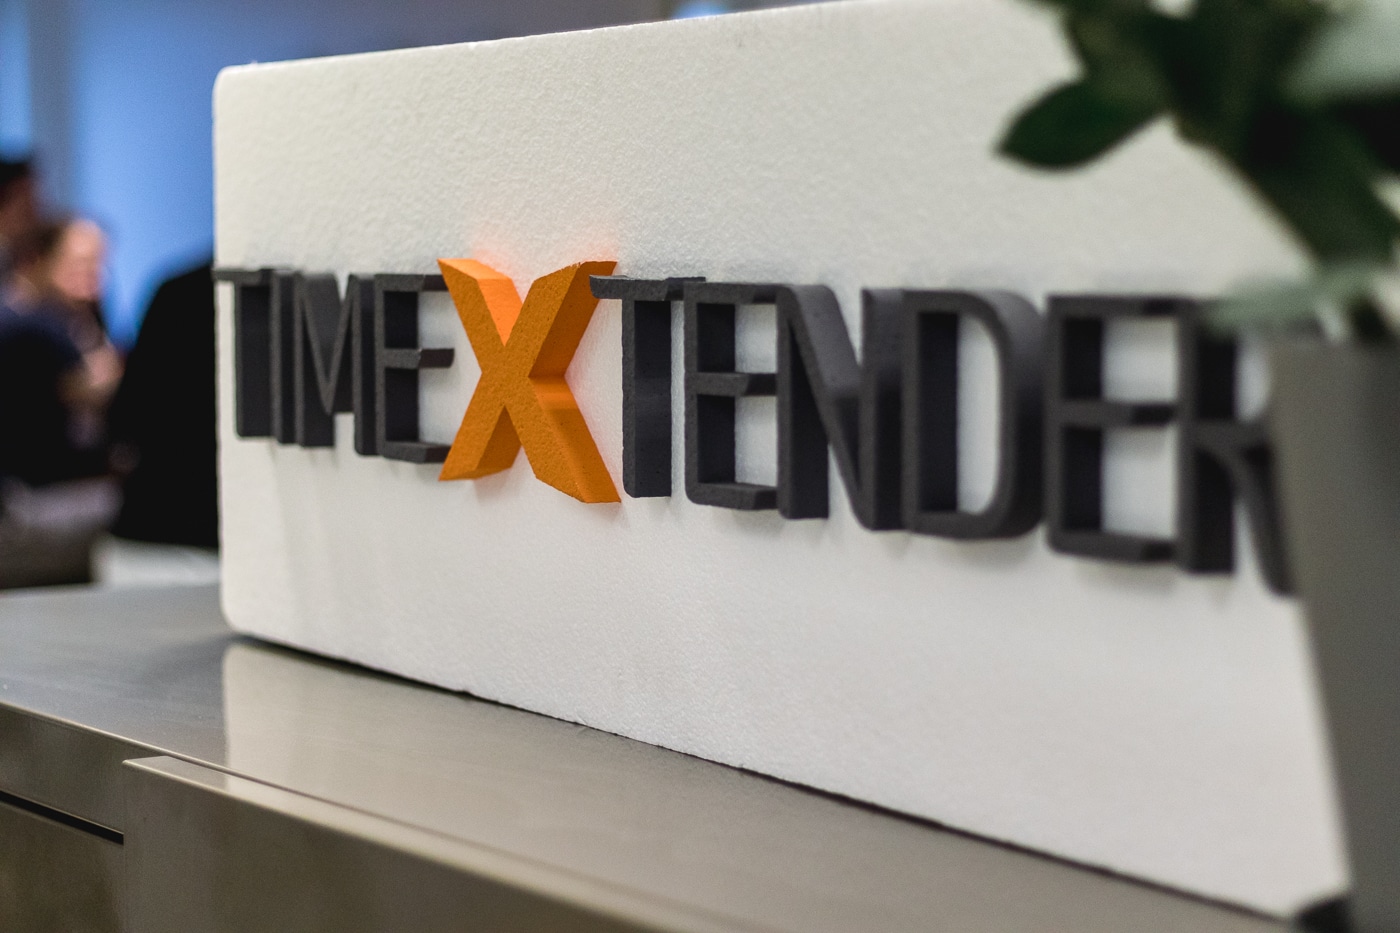 TimeXtender Beheer, TimeXtender, Discovery Hub, Data Management Platform, e-mergo.nl